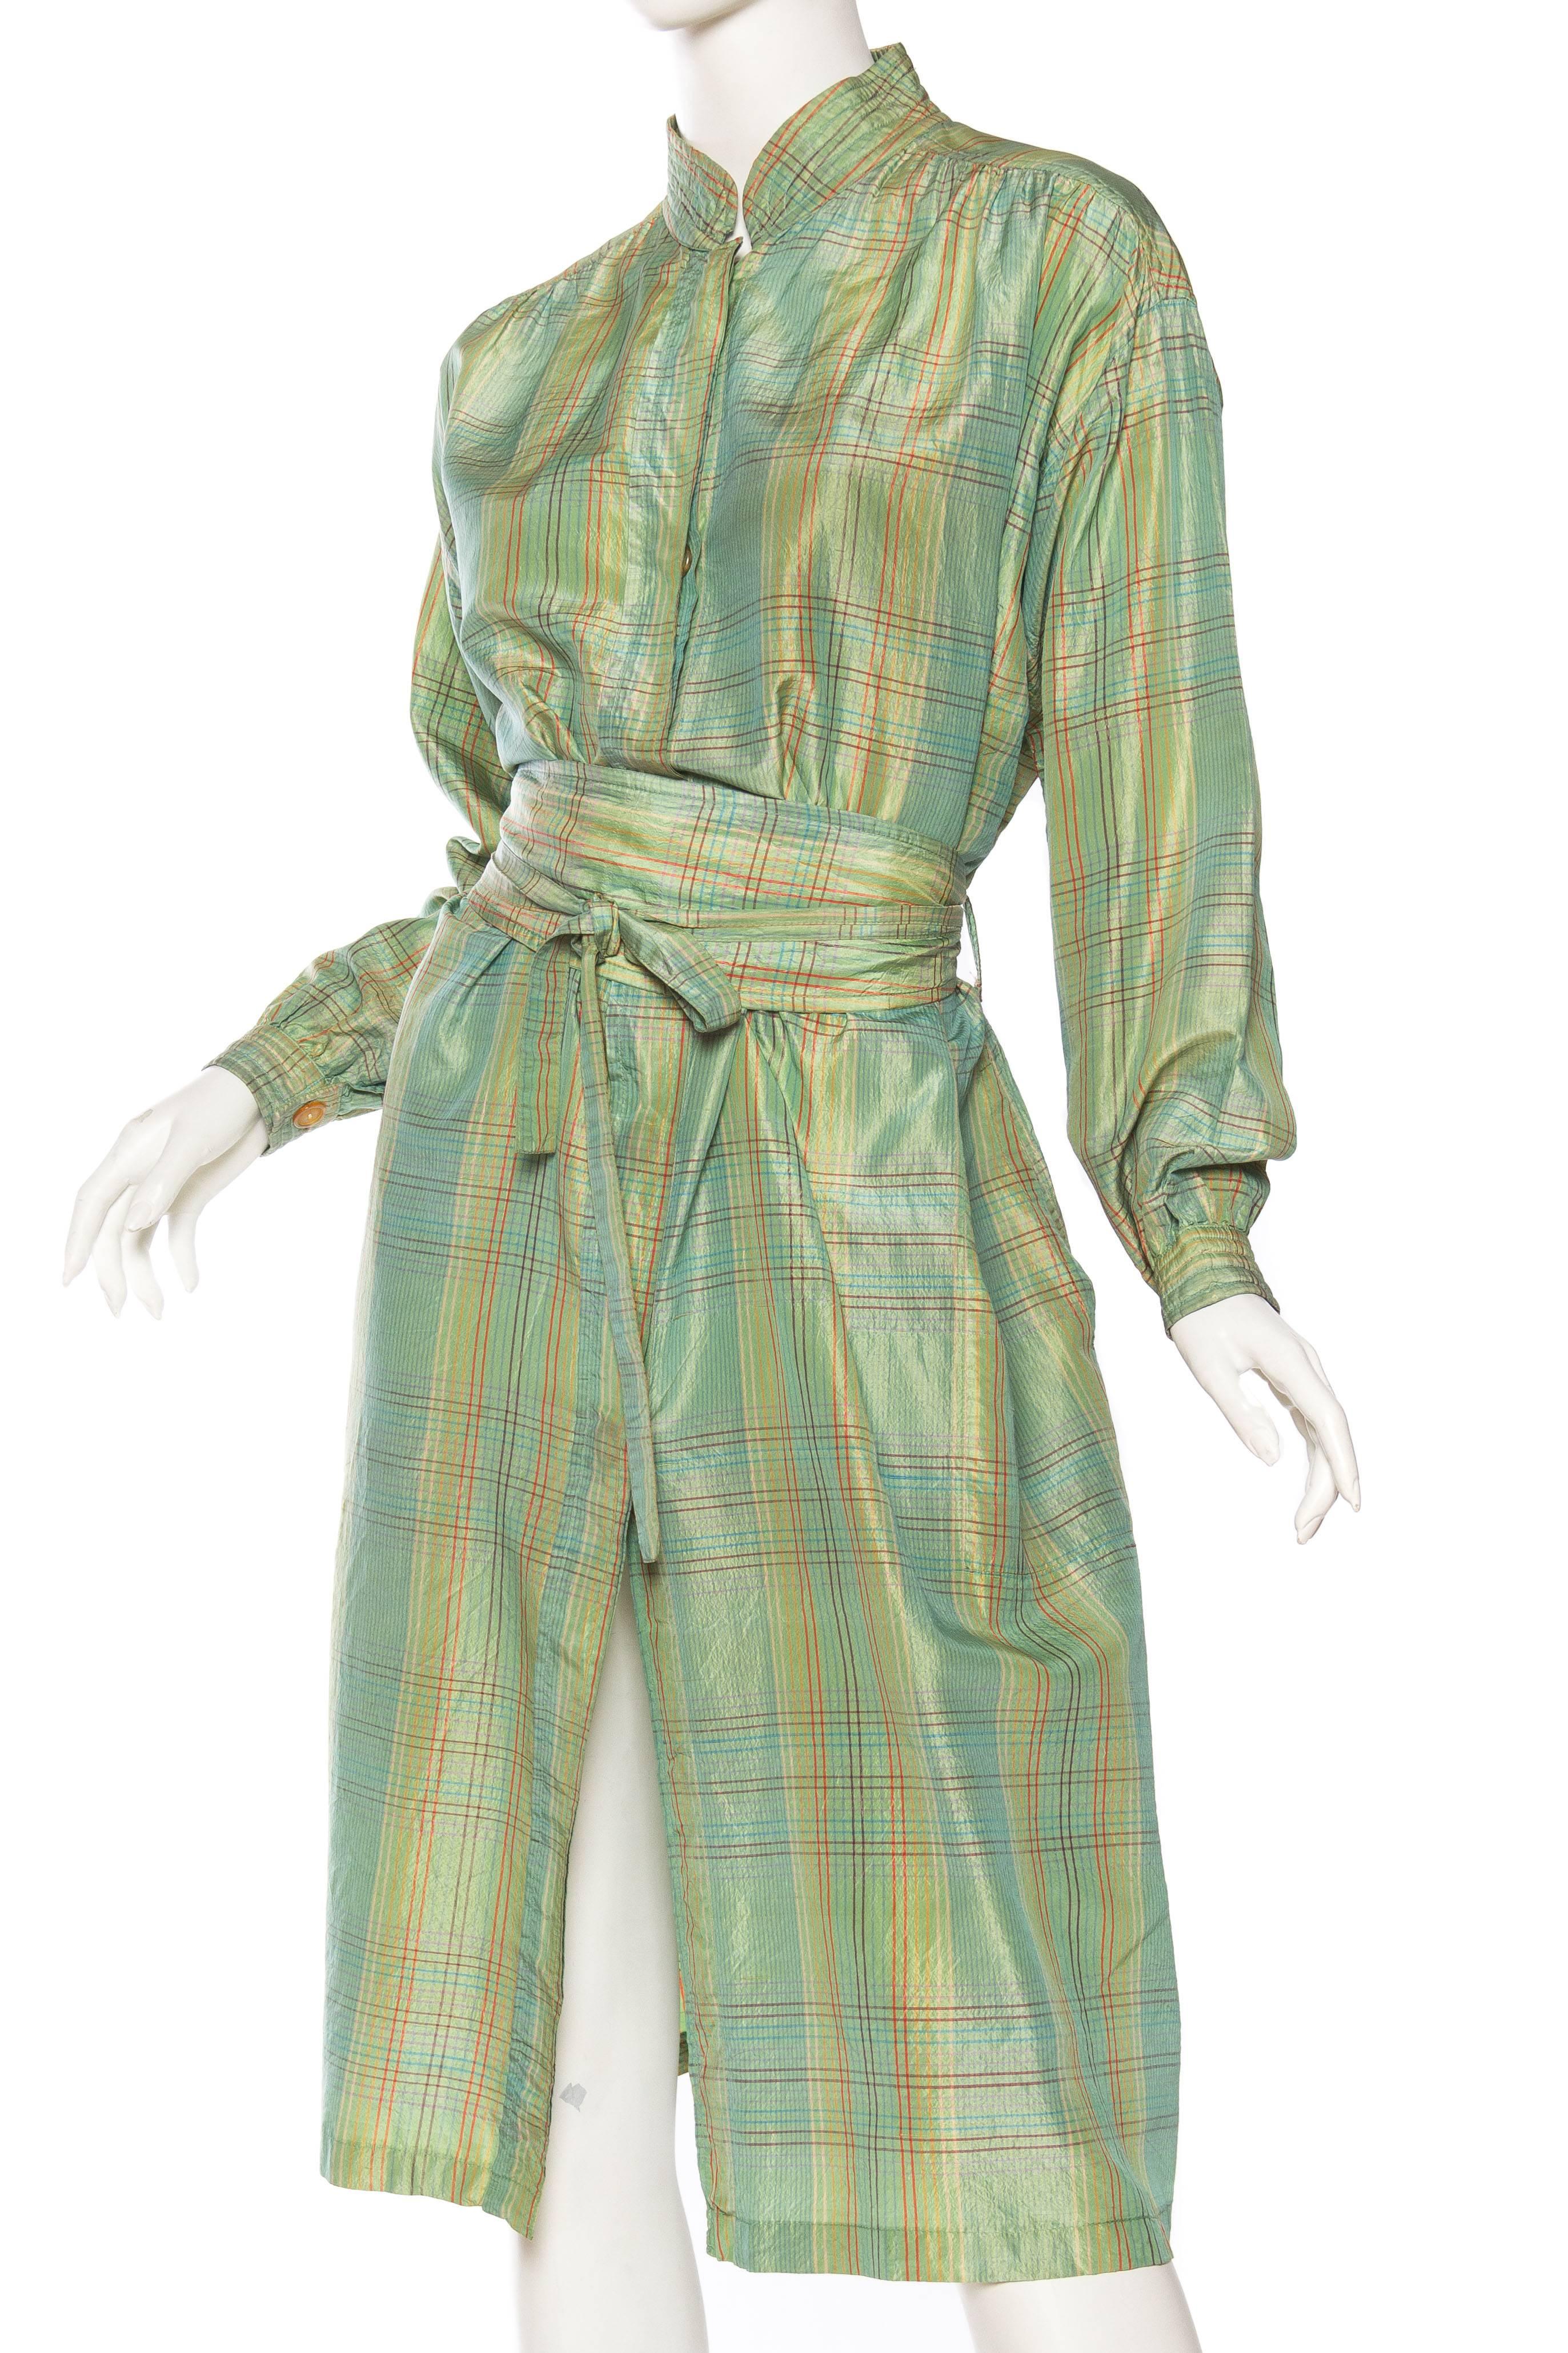 Missoni Silk Dress, 1970s  2